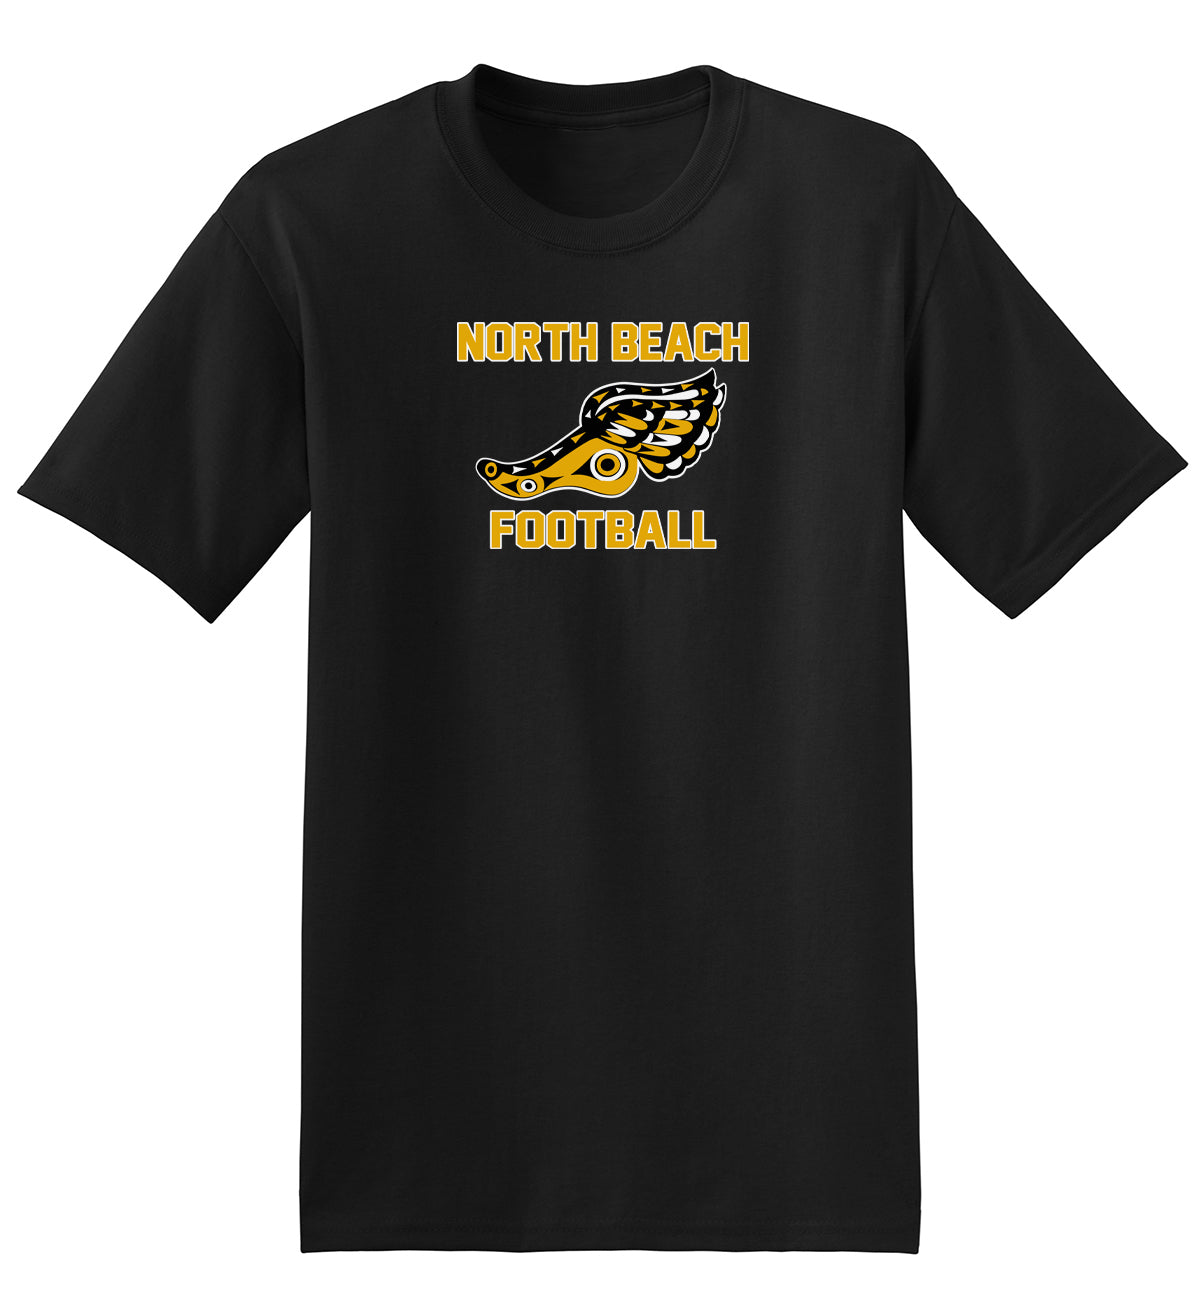 North Beach Football T-Shirt